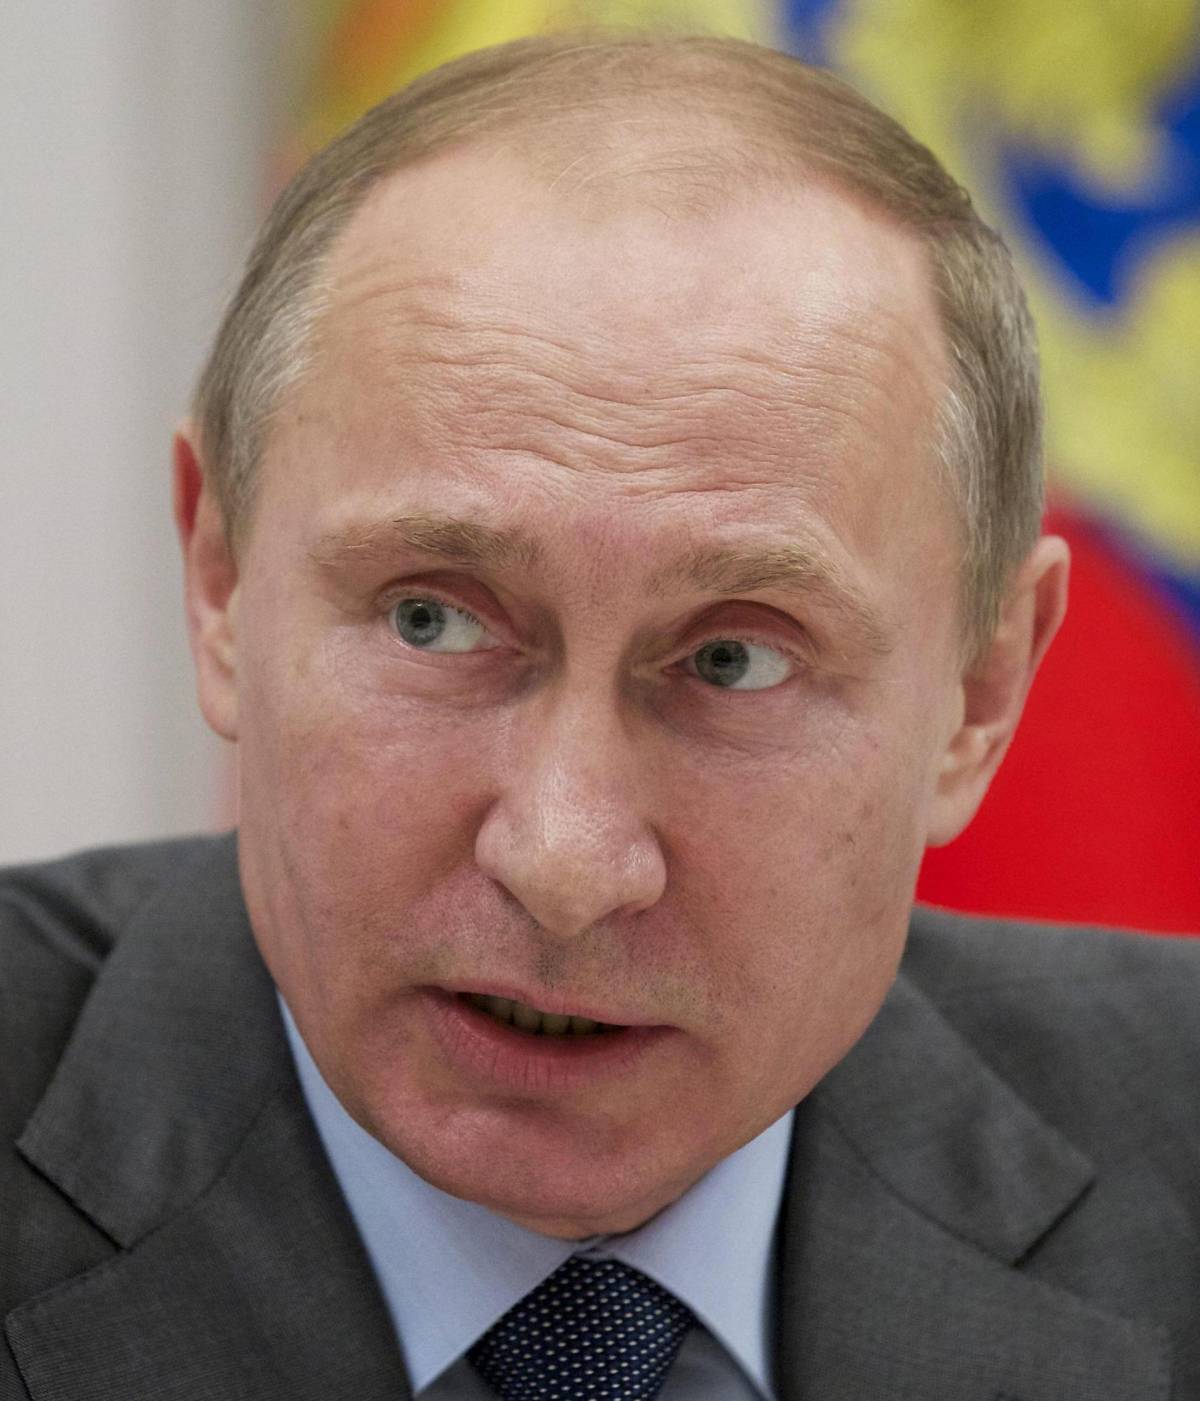 Putin spodesta Obama: «È il più potente del mondo»